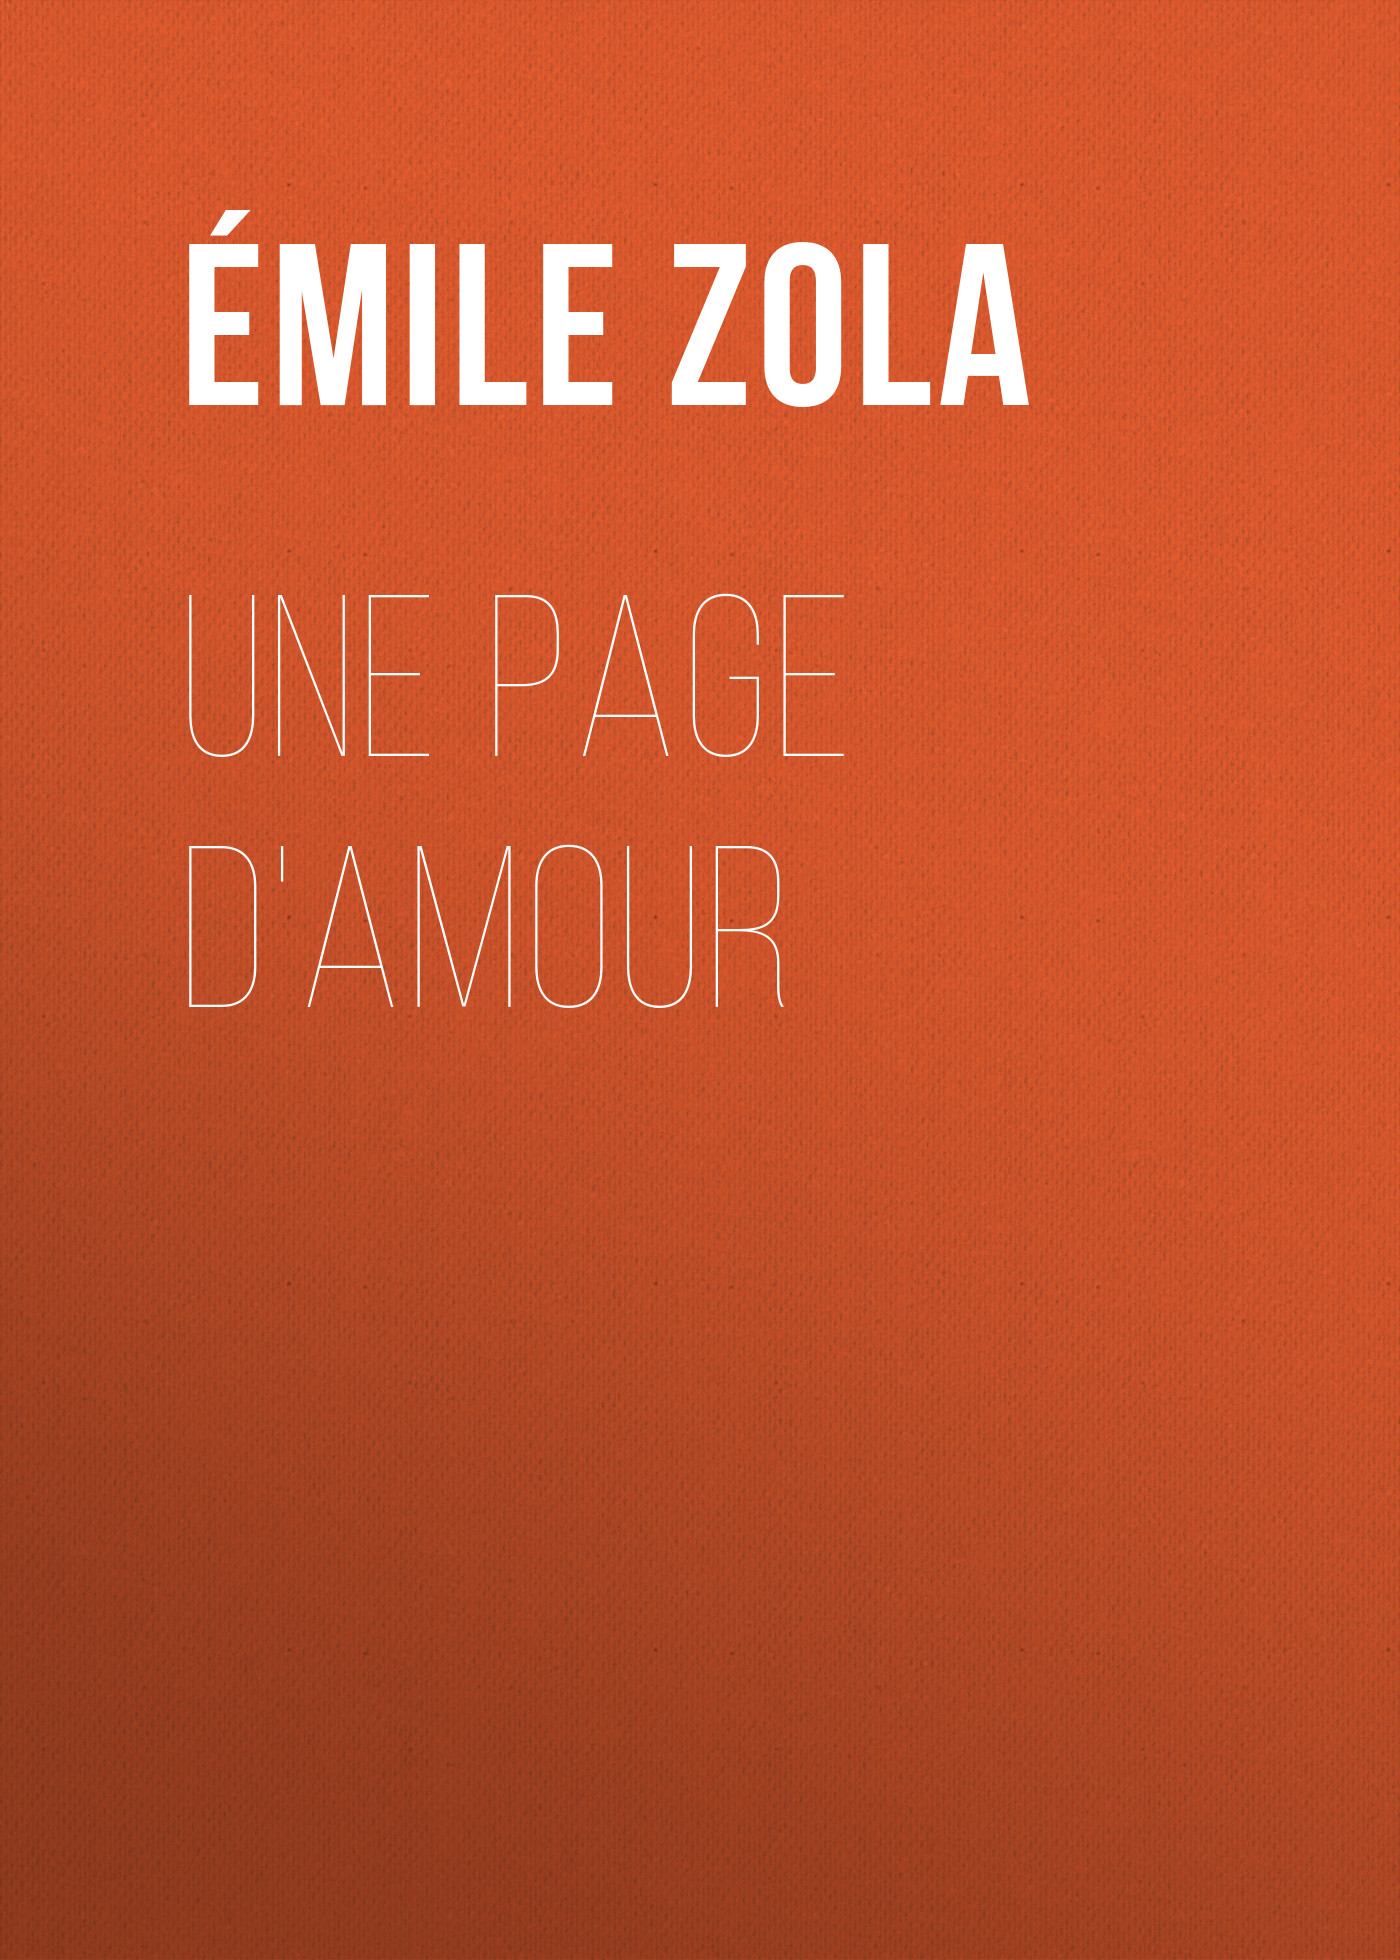 Книга Une page d'amour из серии , созданная Émile Zola, может относится к жанру Литература 19 века, Зарубежная старинная литература, Зарубежная классика. Стоимость электронной книги Une page d'amour с идентификатором 25559924 составляет 0 руб.